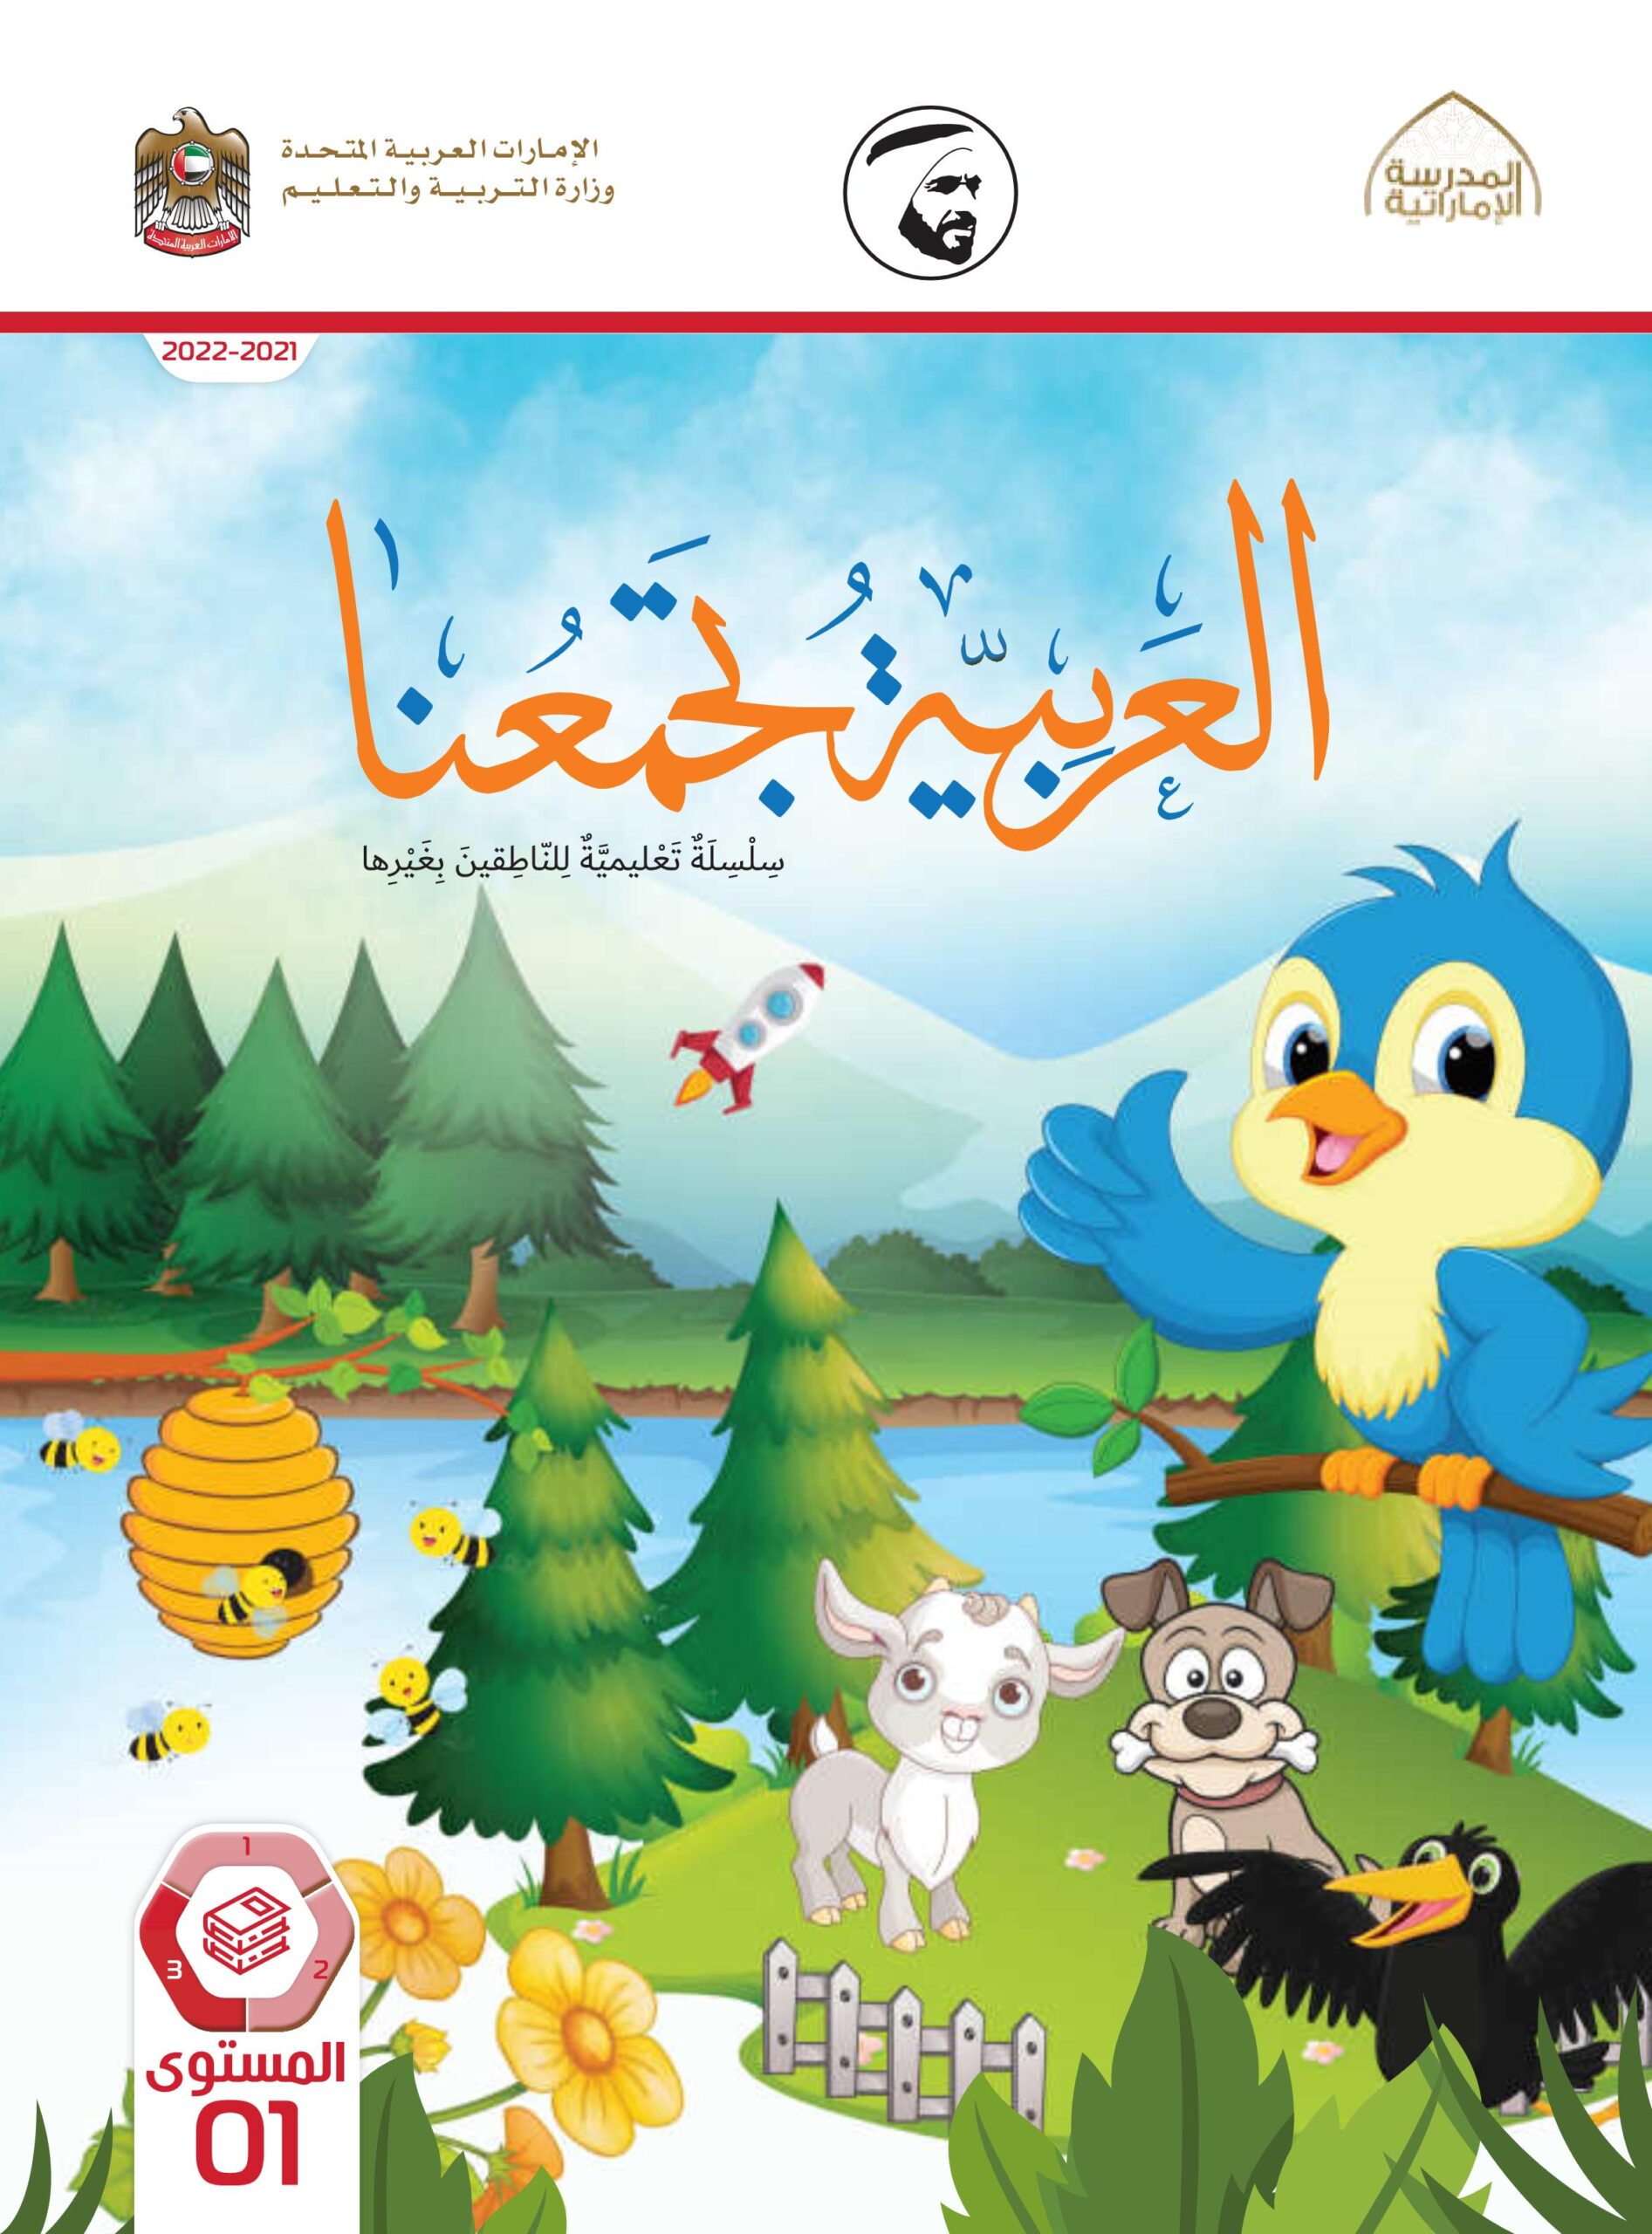 كتاب الطالب لغير الناطقين بها اللغة العربية الصف الأول الفصل الدراسي الثالث 2021-2022